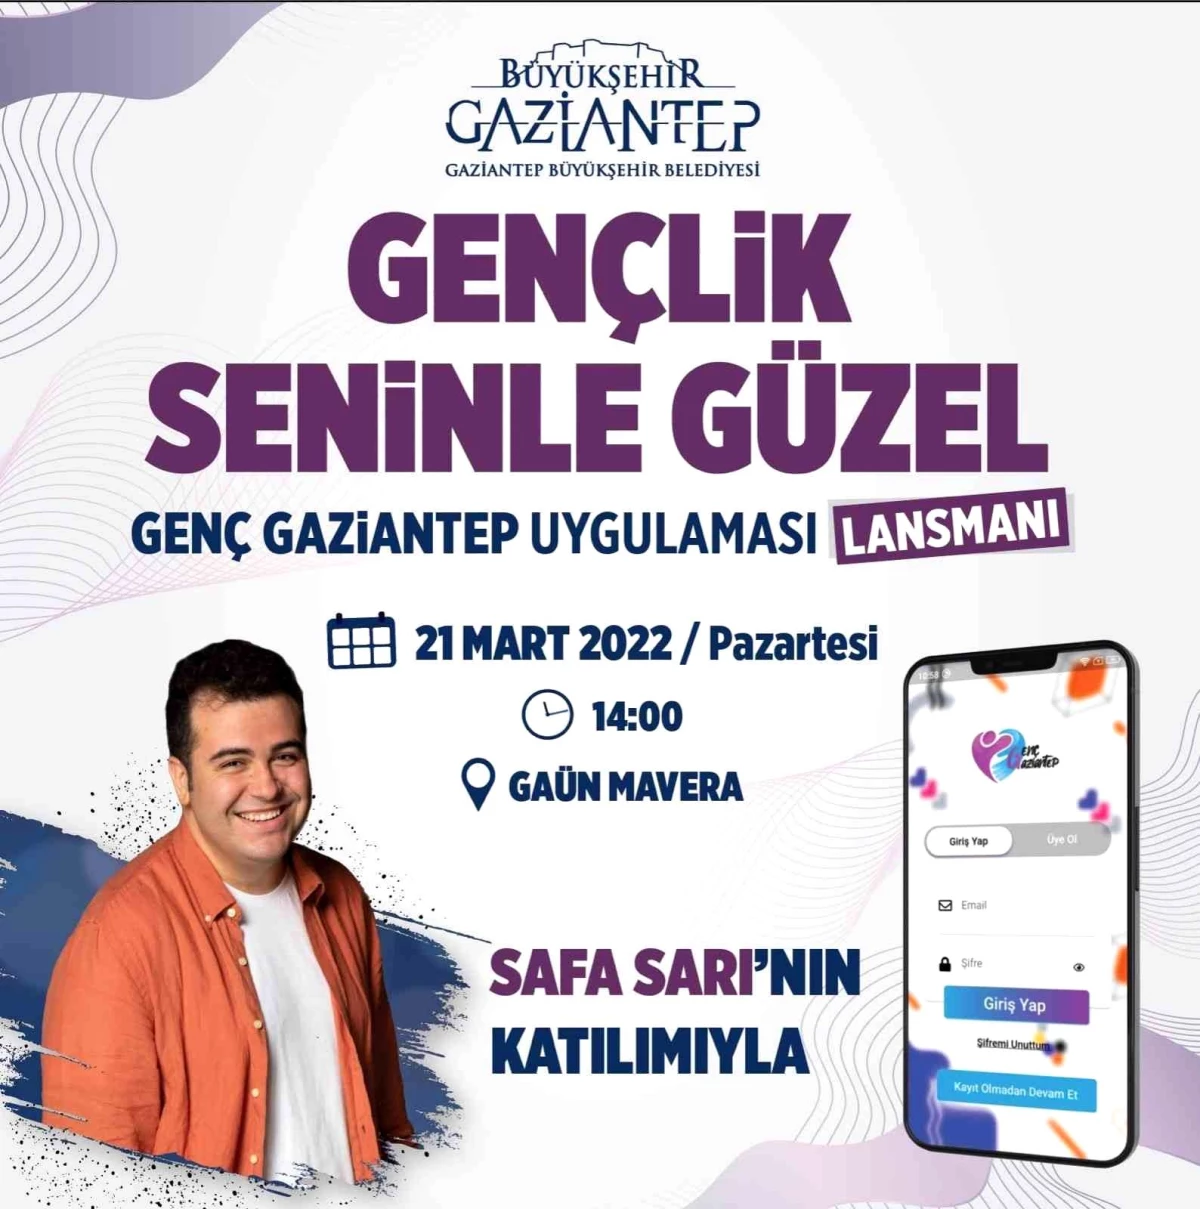 Gençlere özel mobil uygulama: "Genç Gaziantep"